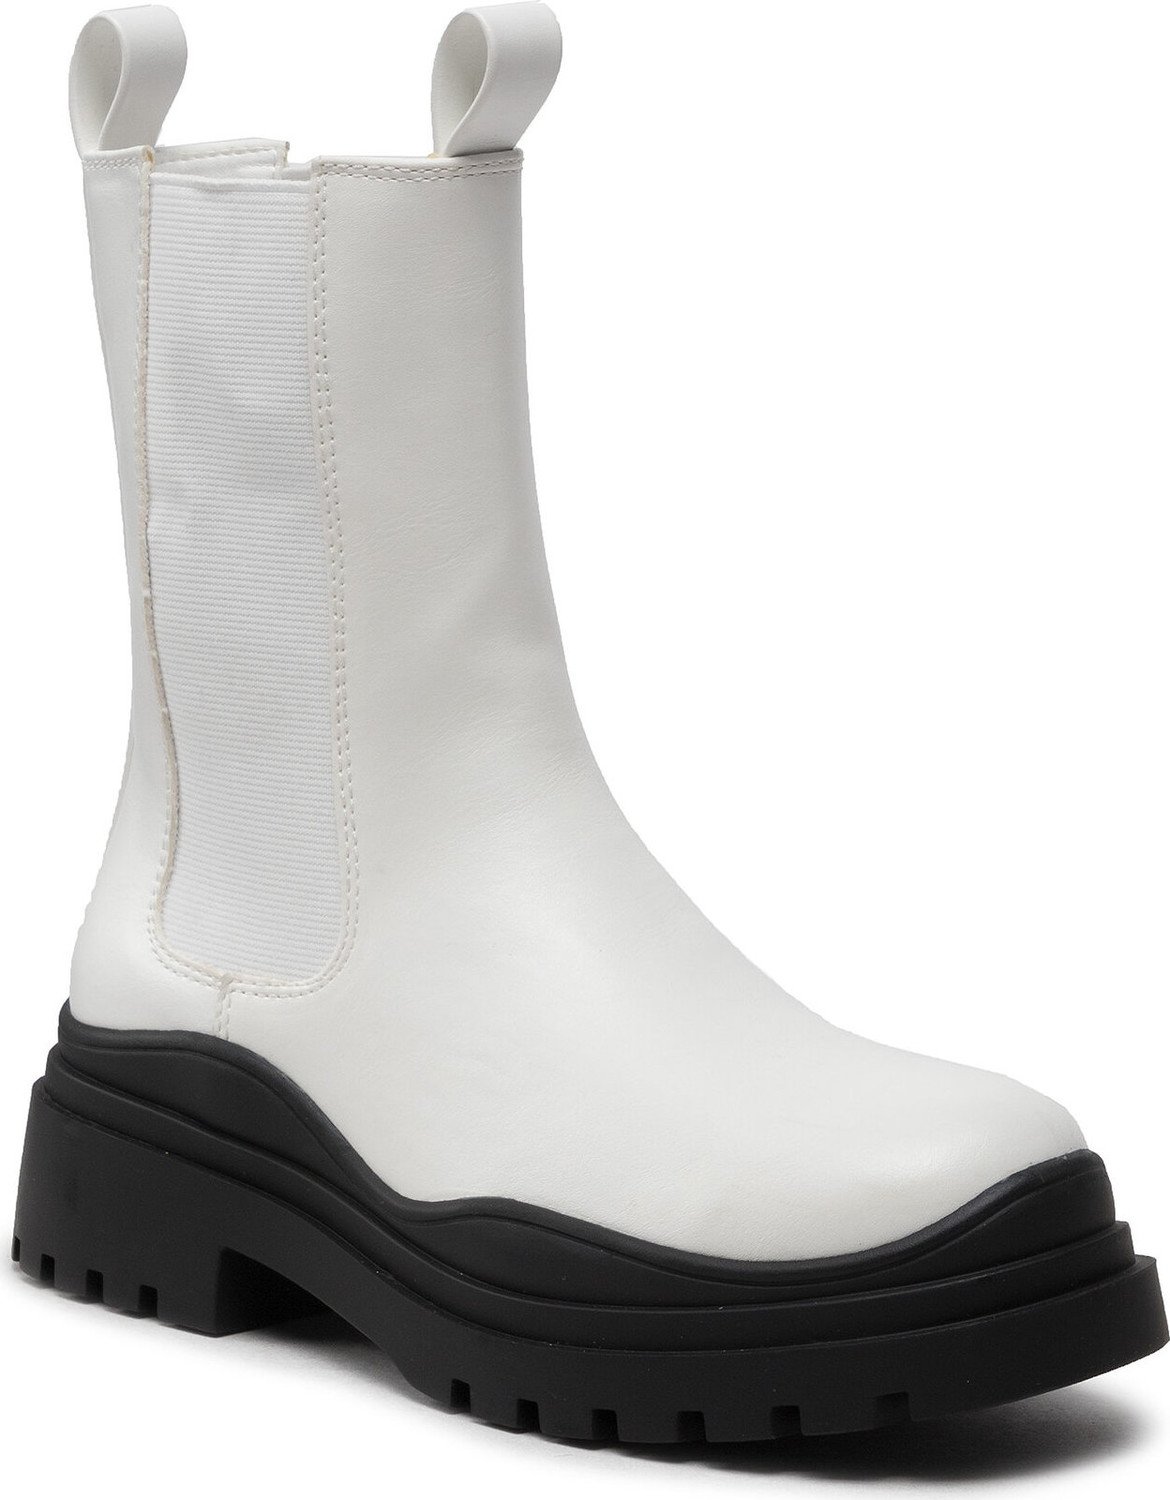 Kotníková obuv s elastickým prvkem DeeZee ZAL90152-1 White/Black